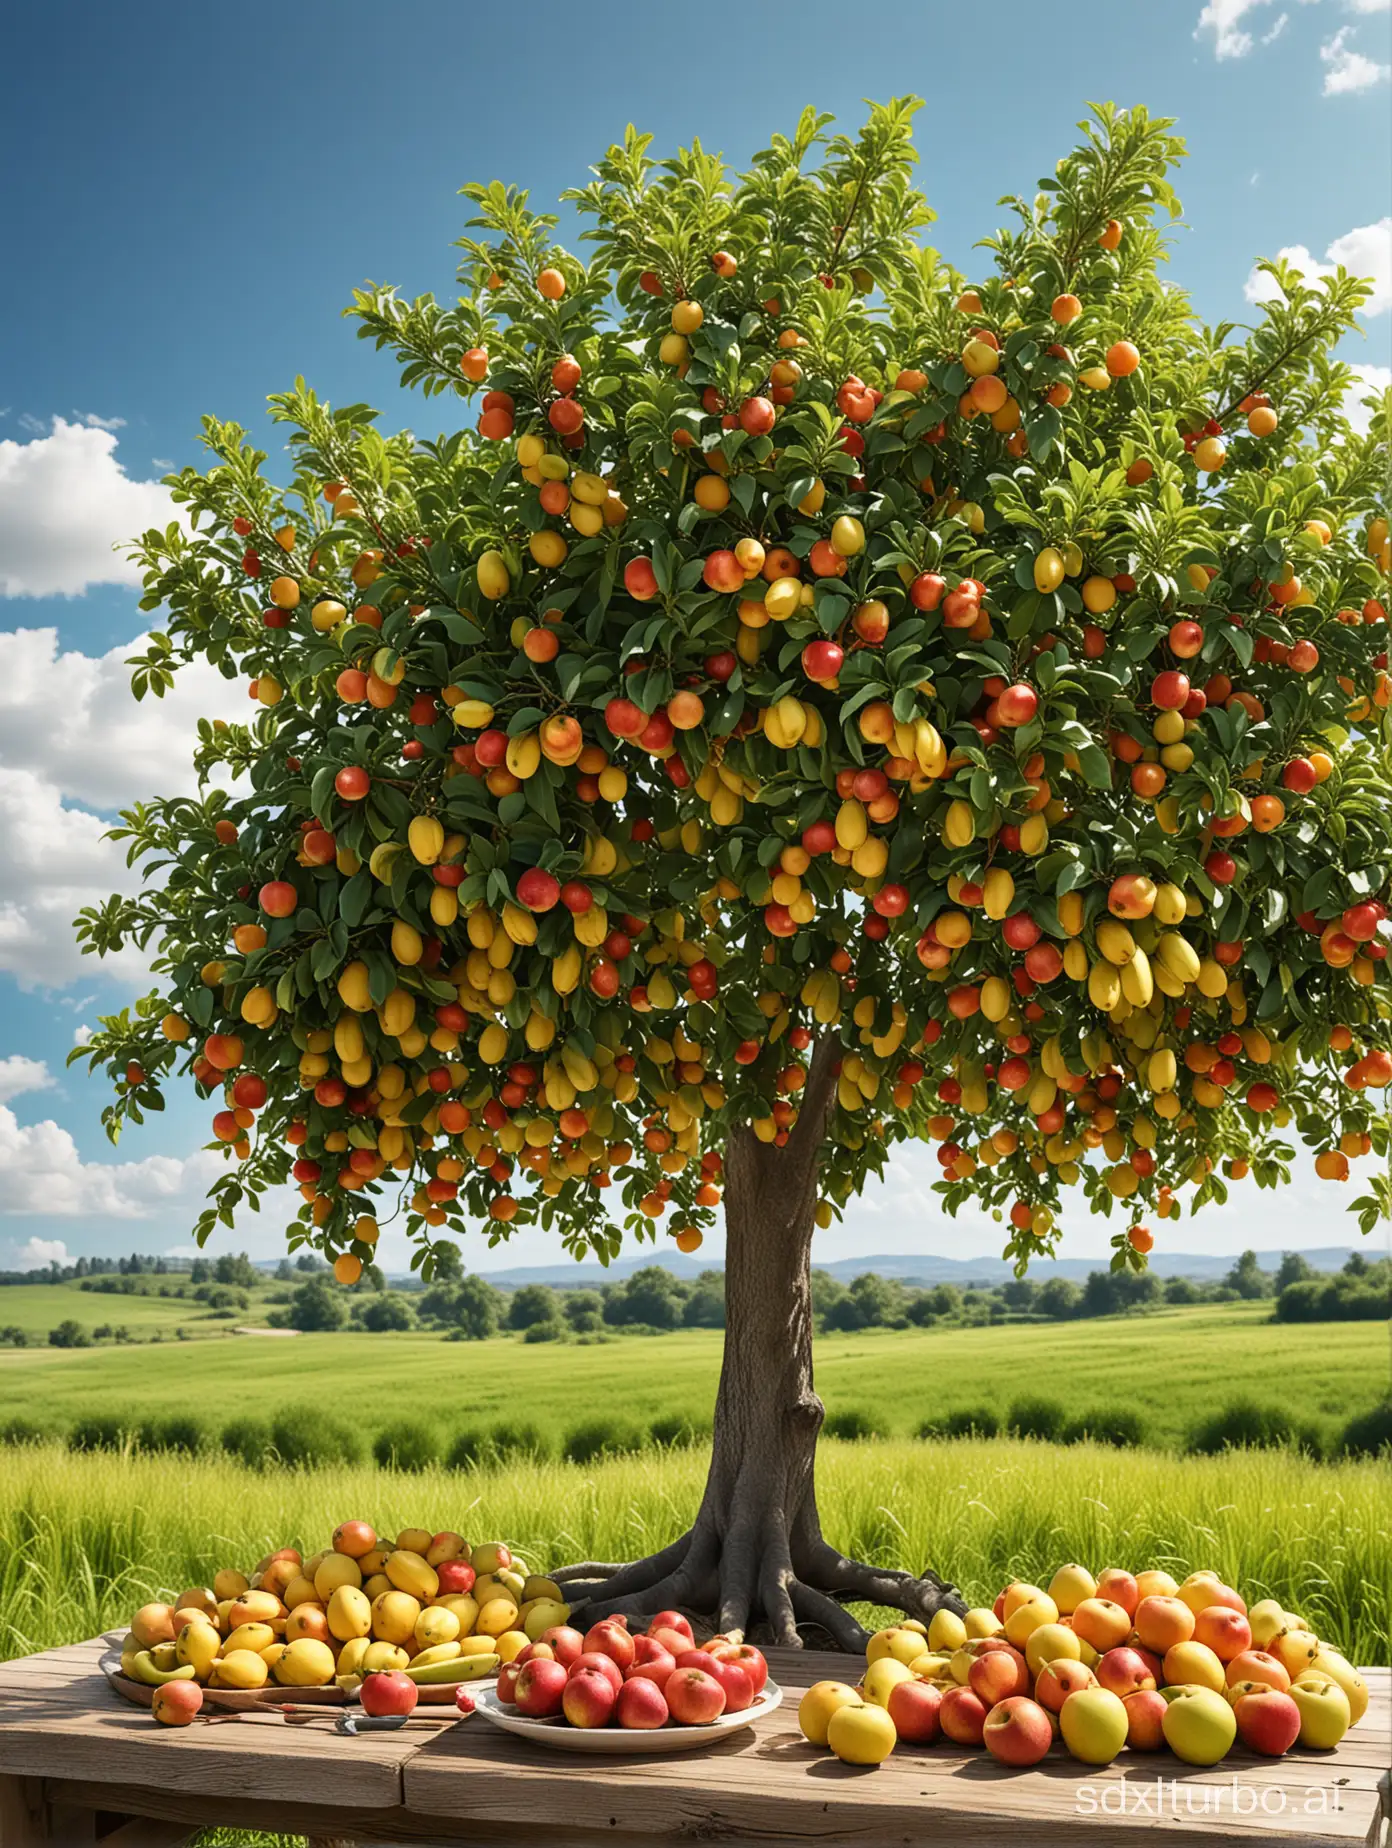 绘制一个逼真的电商直播背景：一棵成熟的果树，树上挂满各种水果，如红色的苹果、黄色的香蕉、绿色的梨子等。果树背后是一片翠绿的草地和远处的蓝天白云，背景中可以看到阳光洒在树叶和水果上，形成美丽的光影效果。桌子上摆放着各种水果，水果的外表光滑晶莹，散发着诱人的香气。希望能够体现出水果的真实质感和色彩，让观众感受到丰收的喜悦和新鲜的气息。"